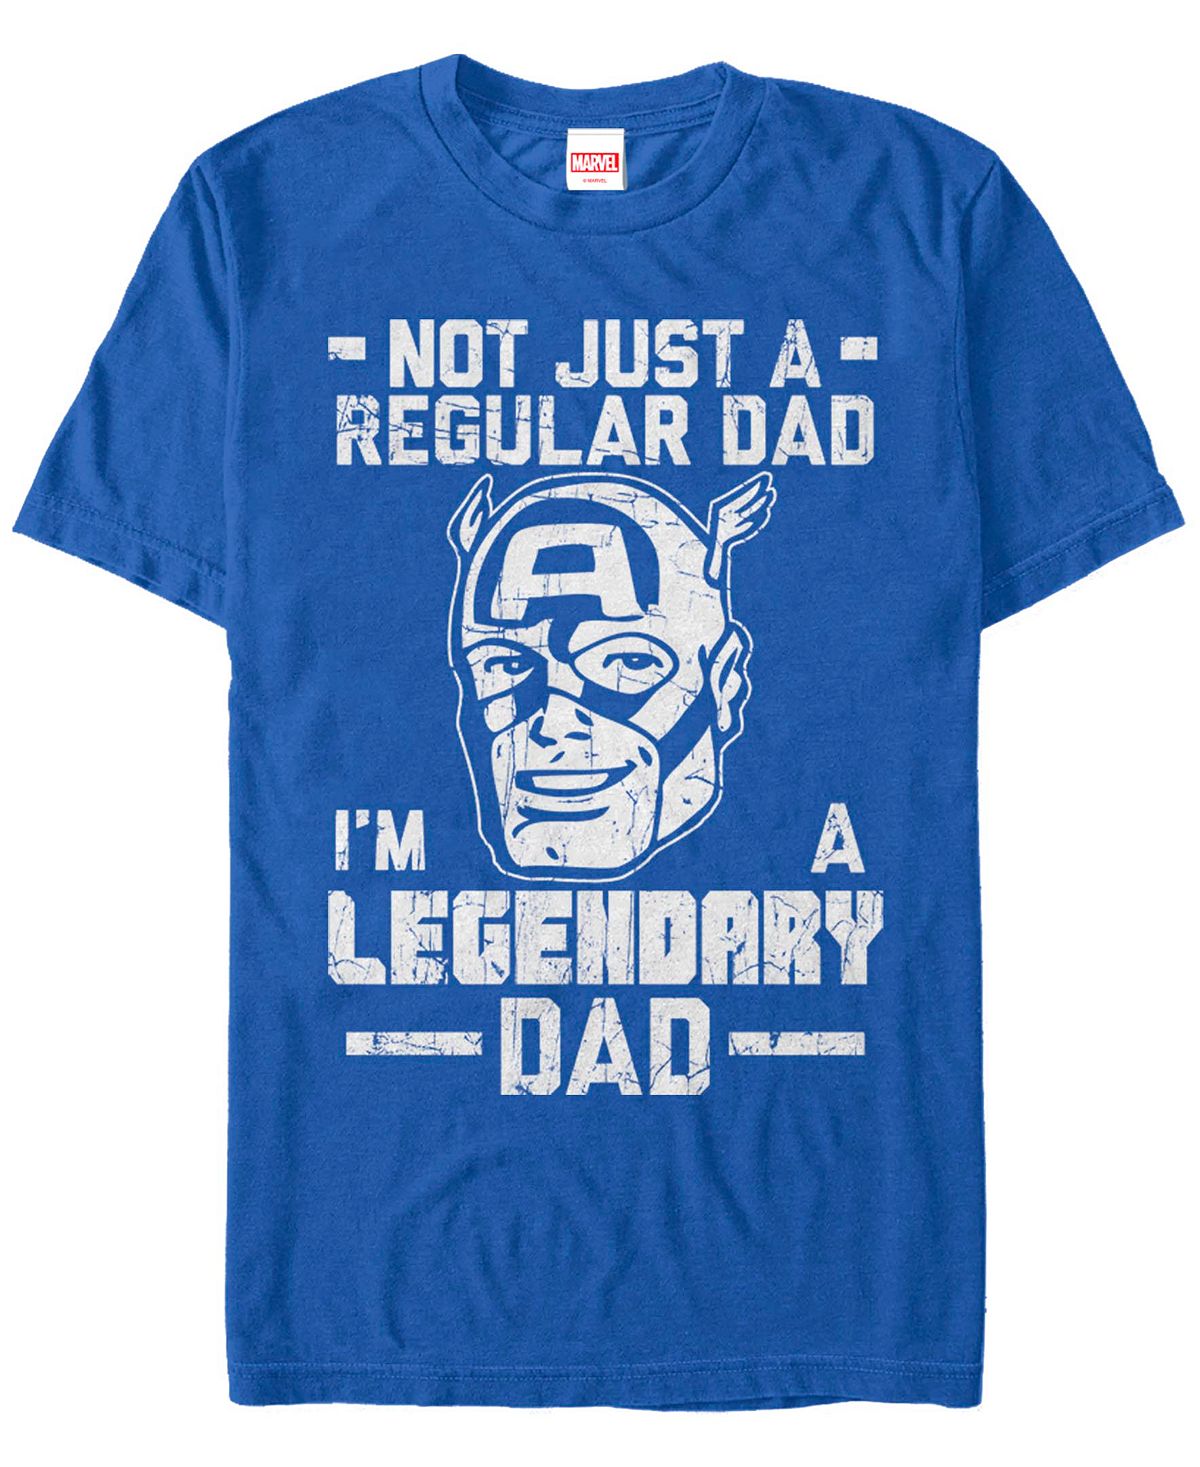 Мужская футболка legendary dad man с коротким рукавом с круглым вырезом Fifth Sun